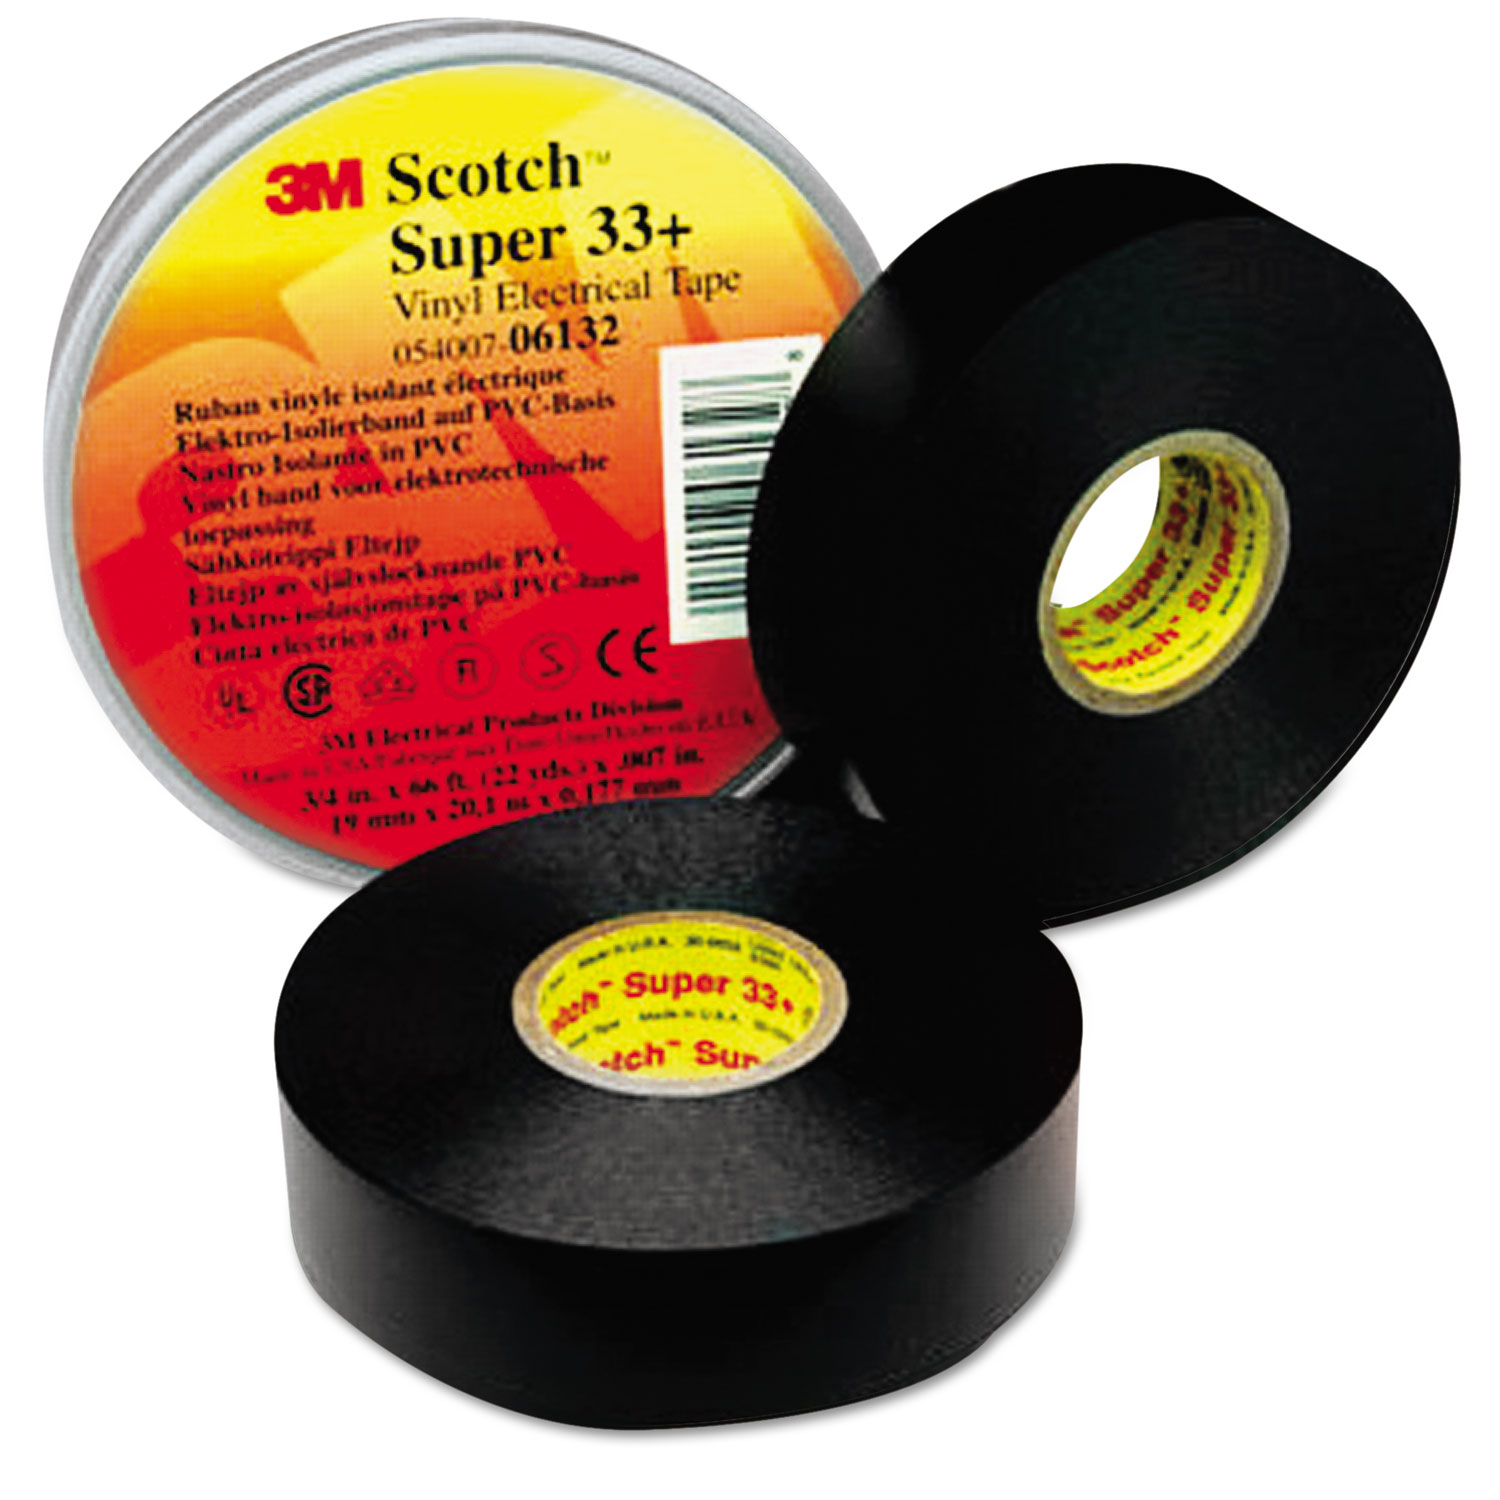 Scotch 33+ Super Vinyl Electrical Tape, 3/4 x 52ft